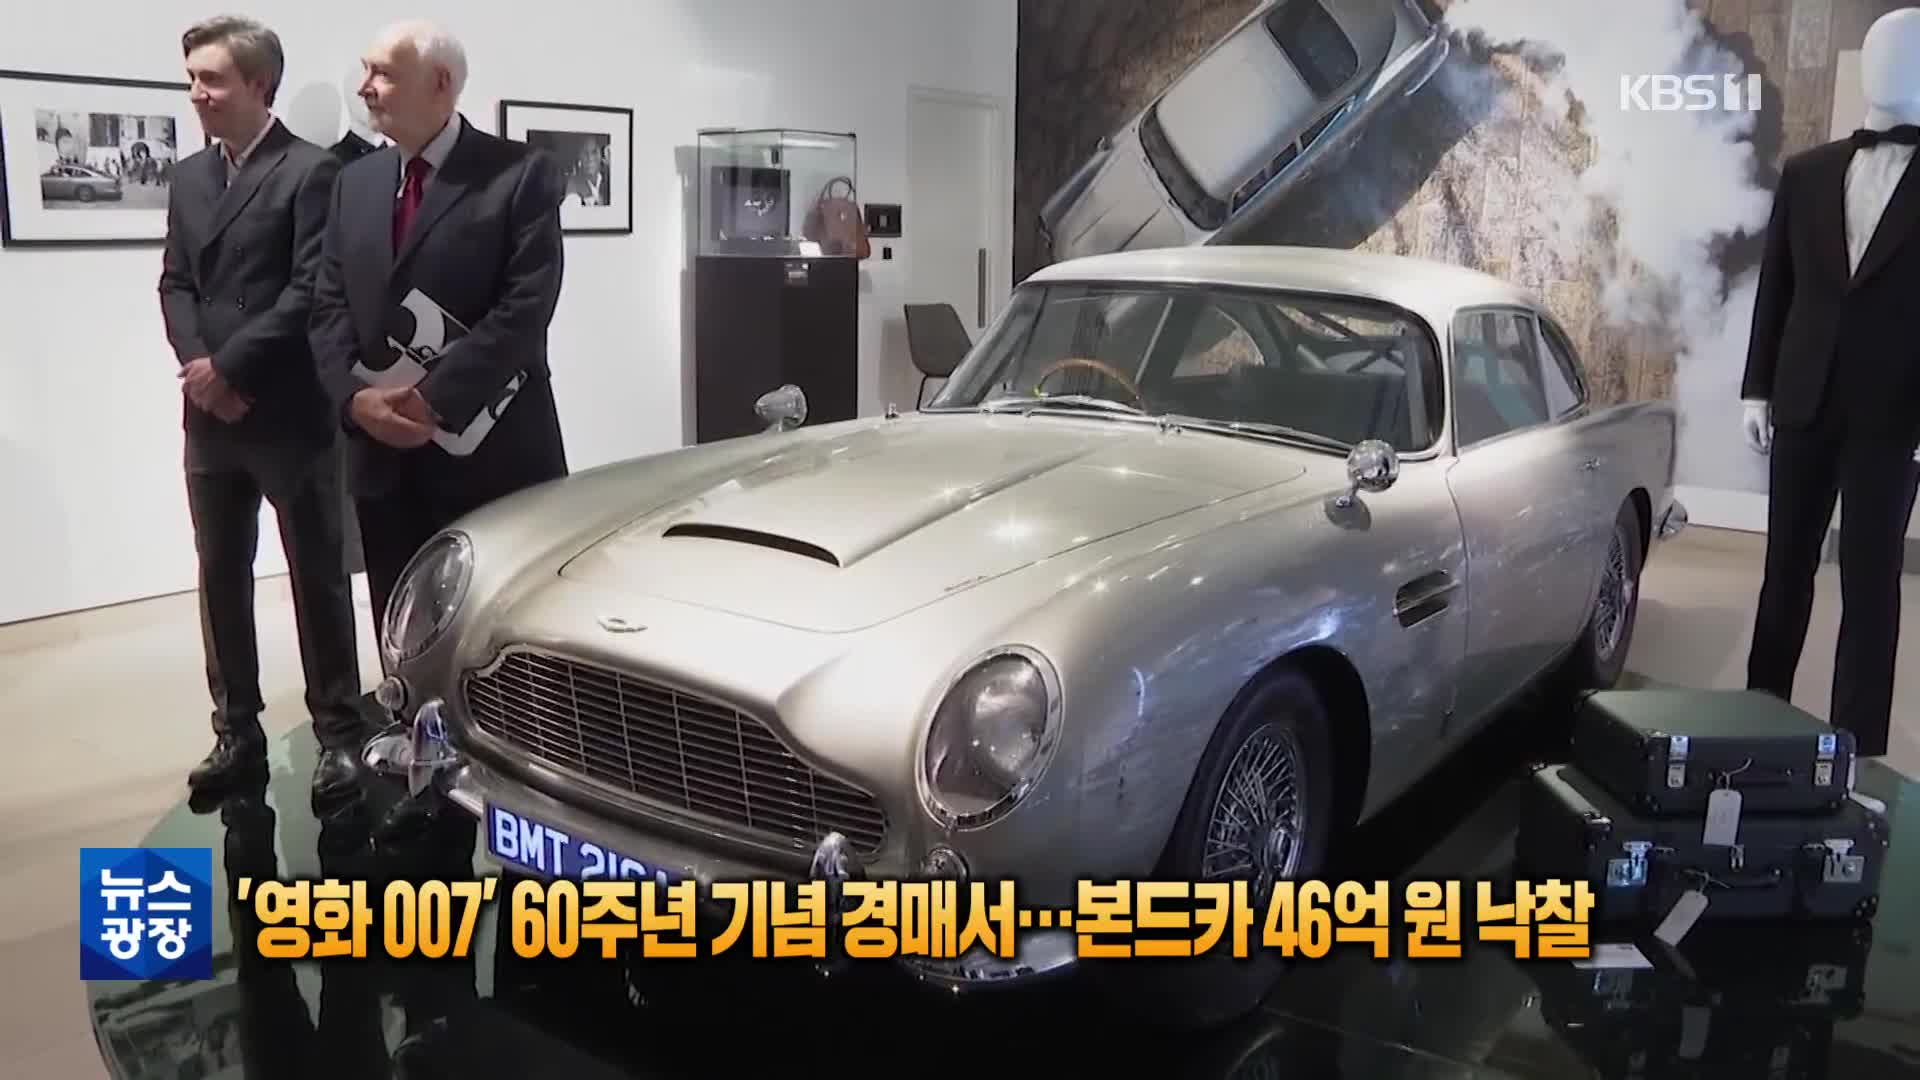 [톡톡 지구촌] ‘영화 007’ 60주년 기념 경매서…본드카 46억 원 낙찰